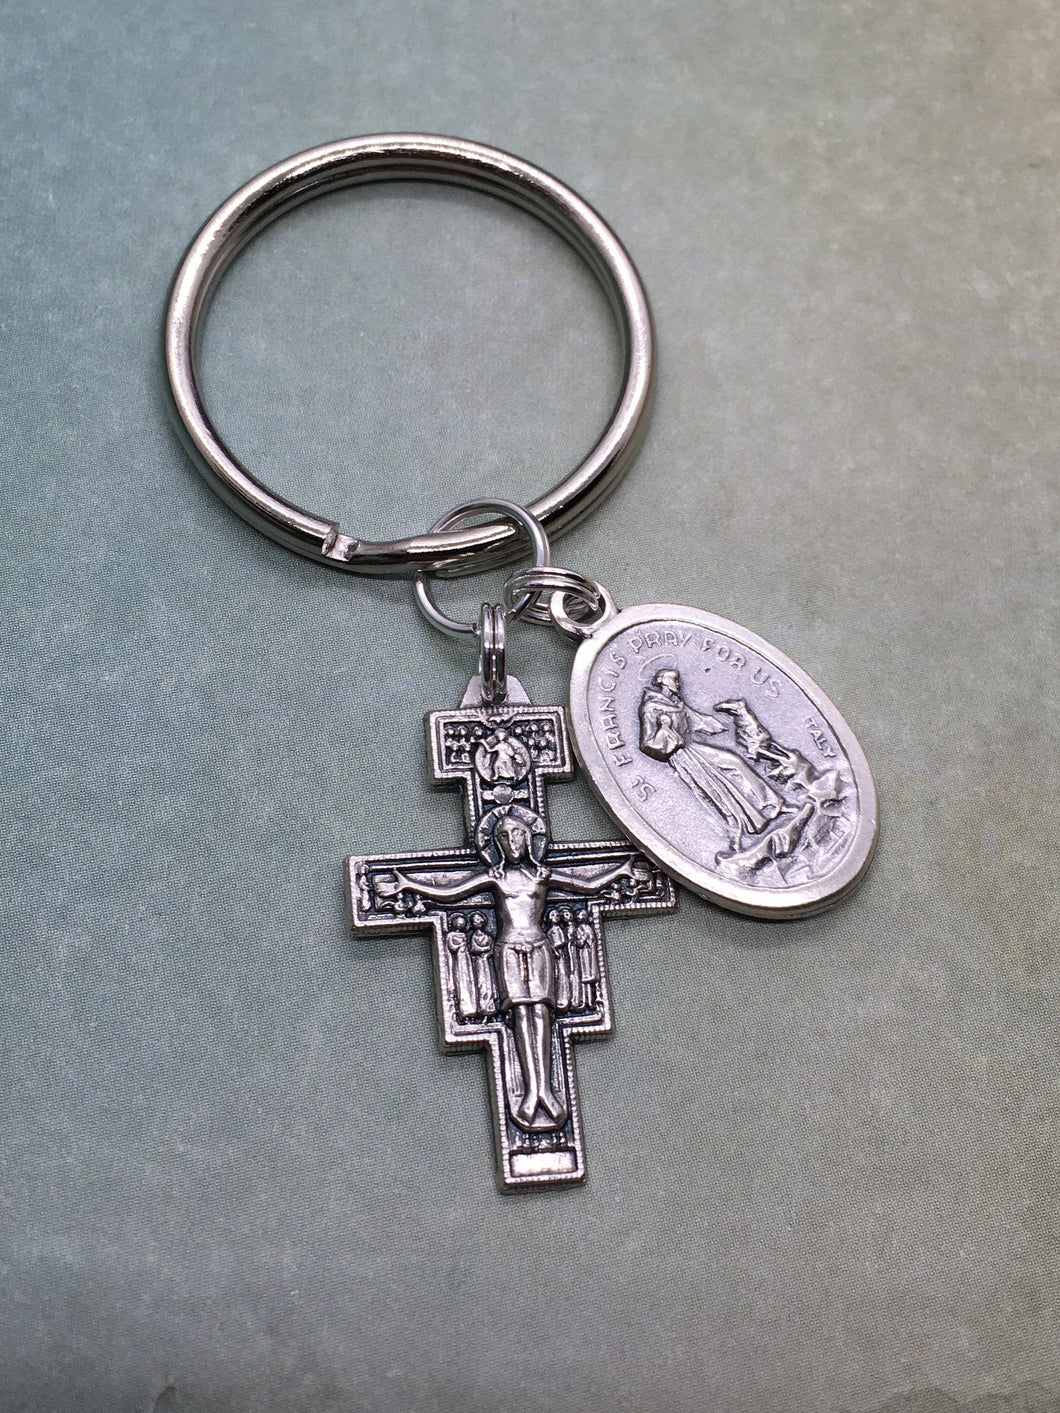 Franciscan key ring